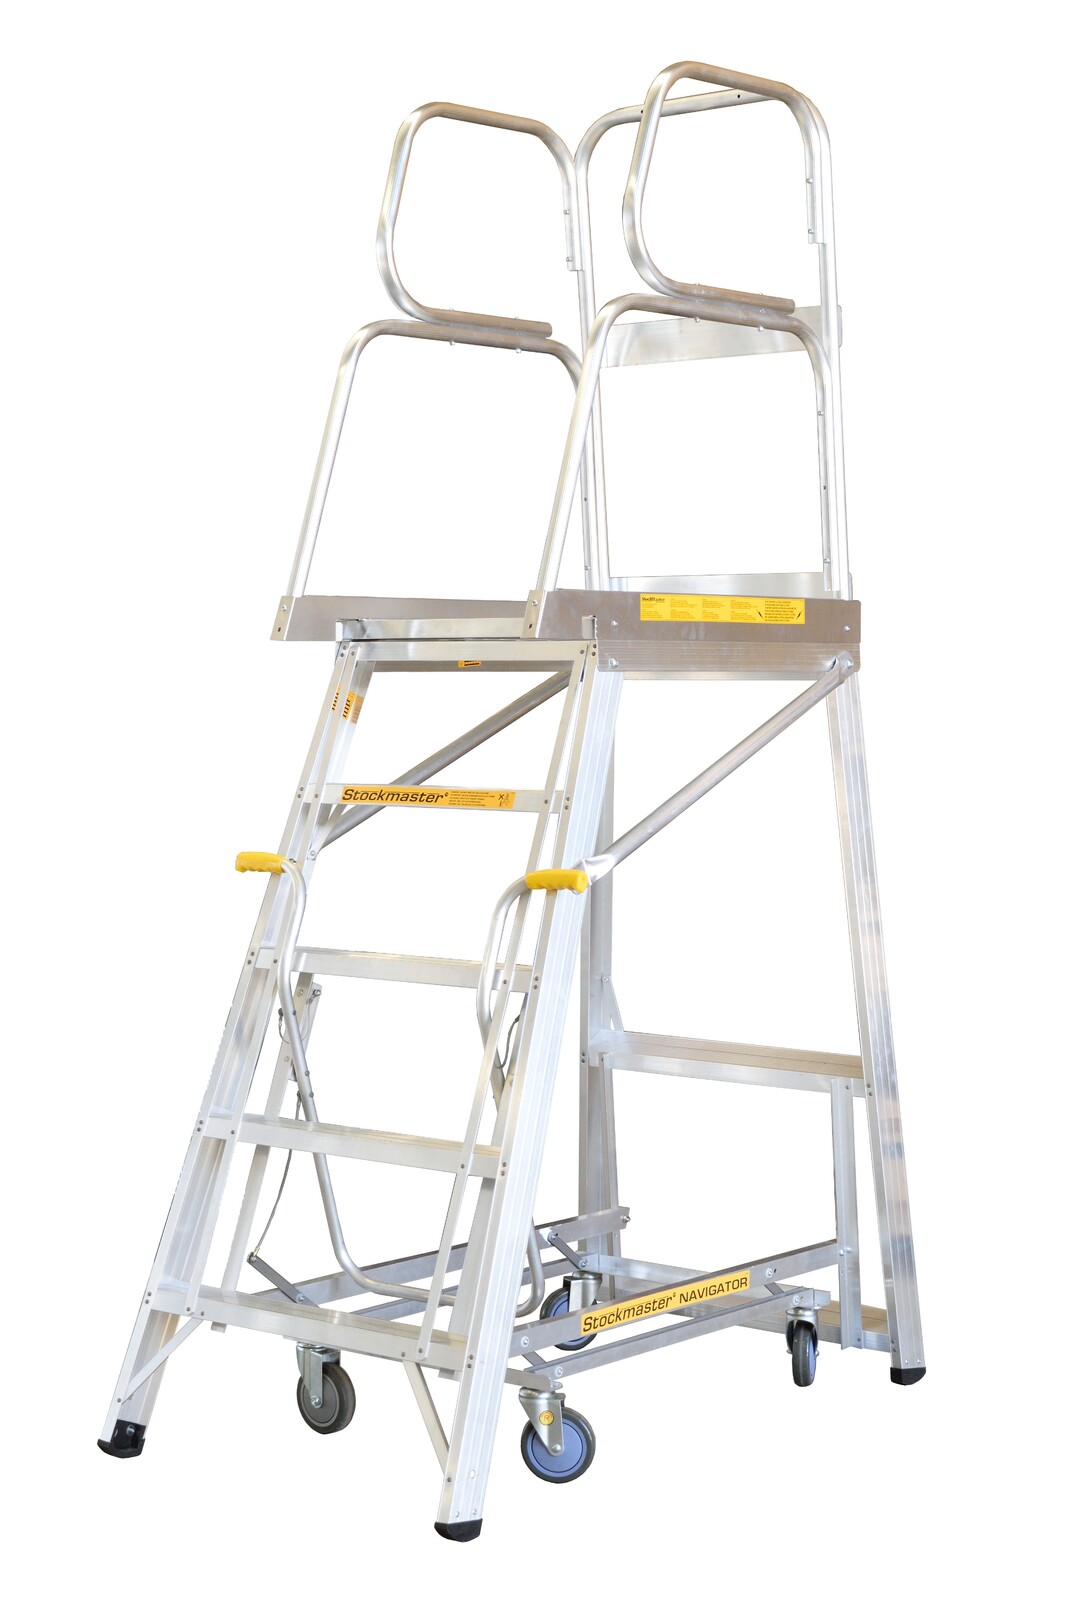 Stockmaster 150kg Rated Mobile Work Platform Ladder Navigator - 1.1m